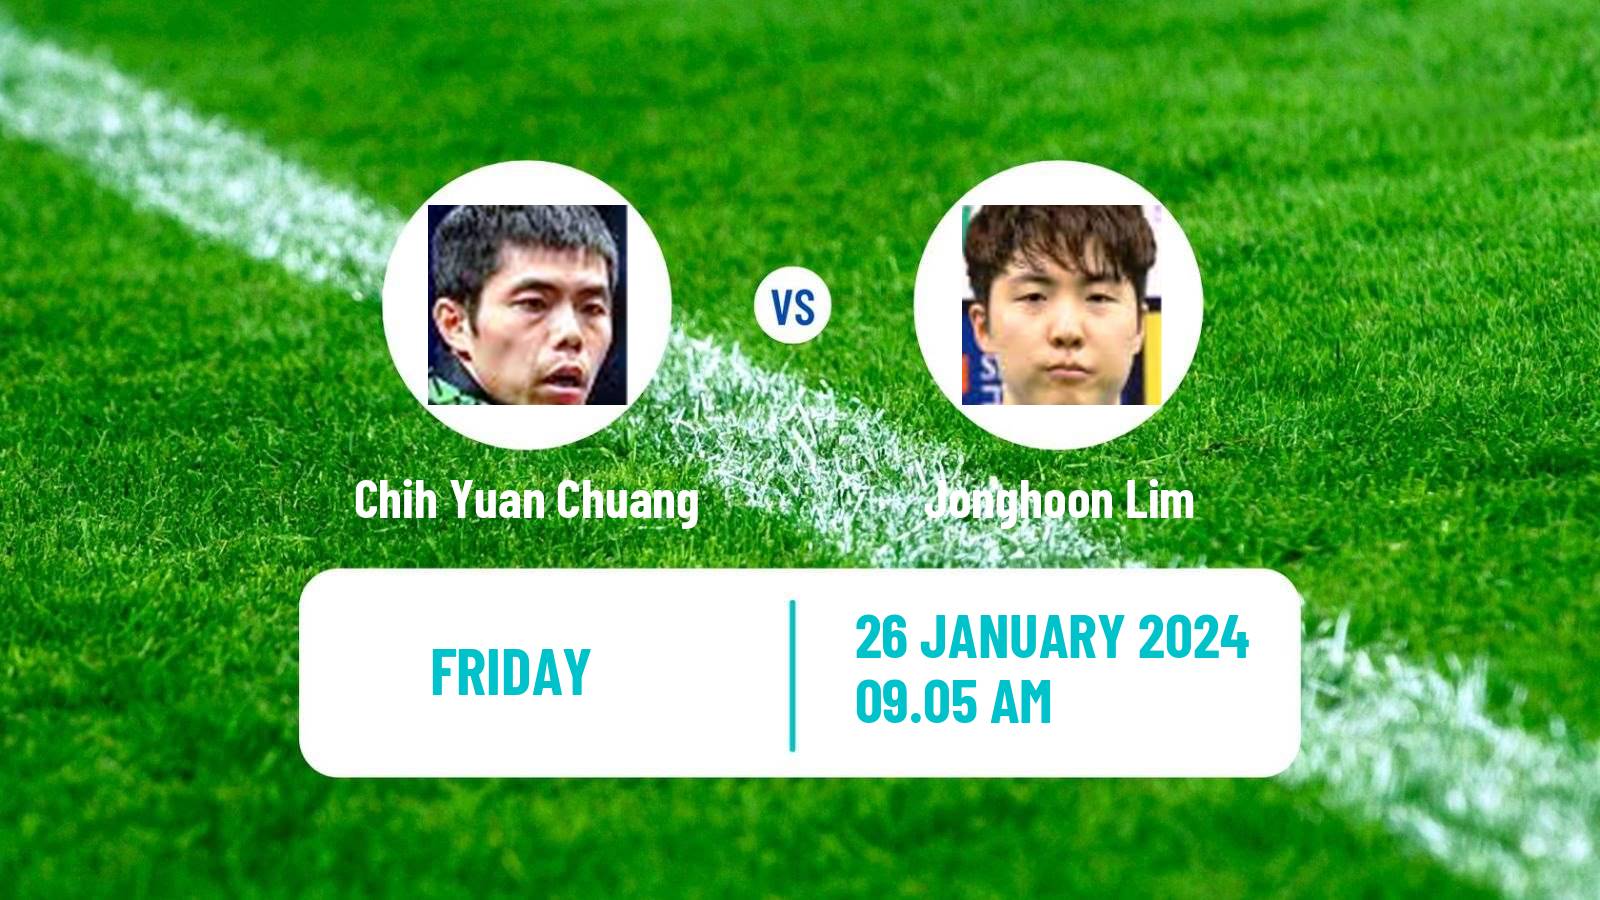 Table tennis Wtt Star Contender Goa Men Chih Yuan Chuang - Jonghoon Lim